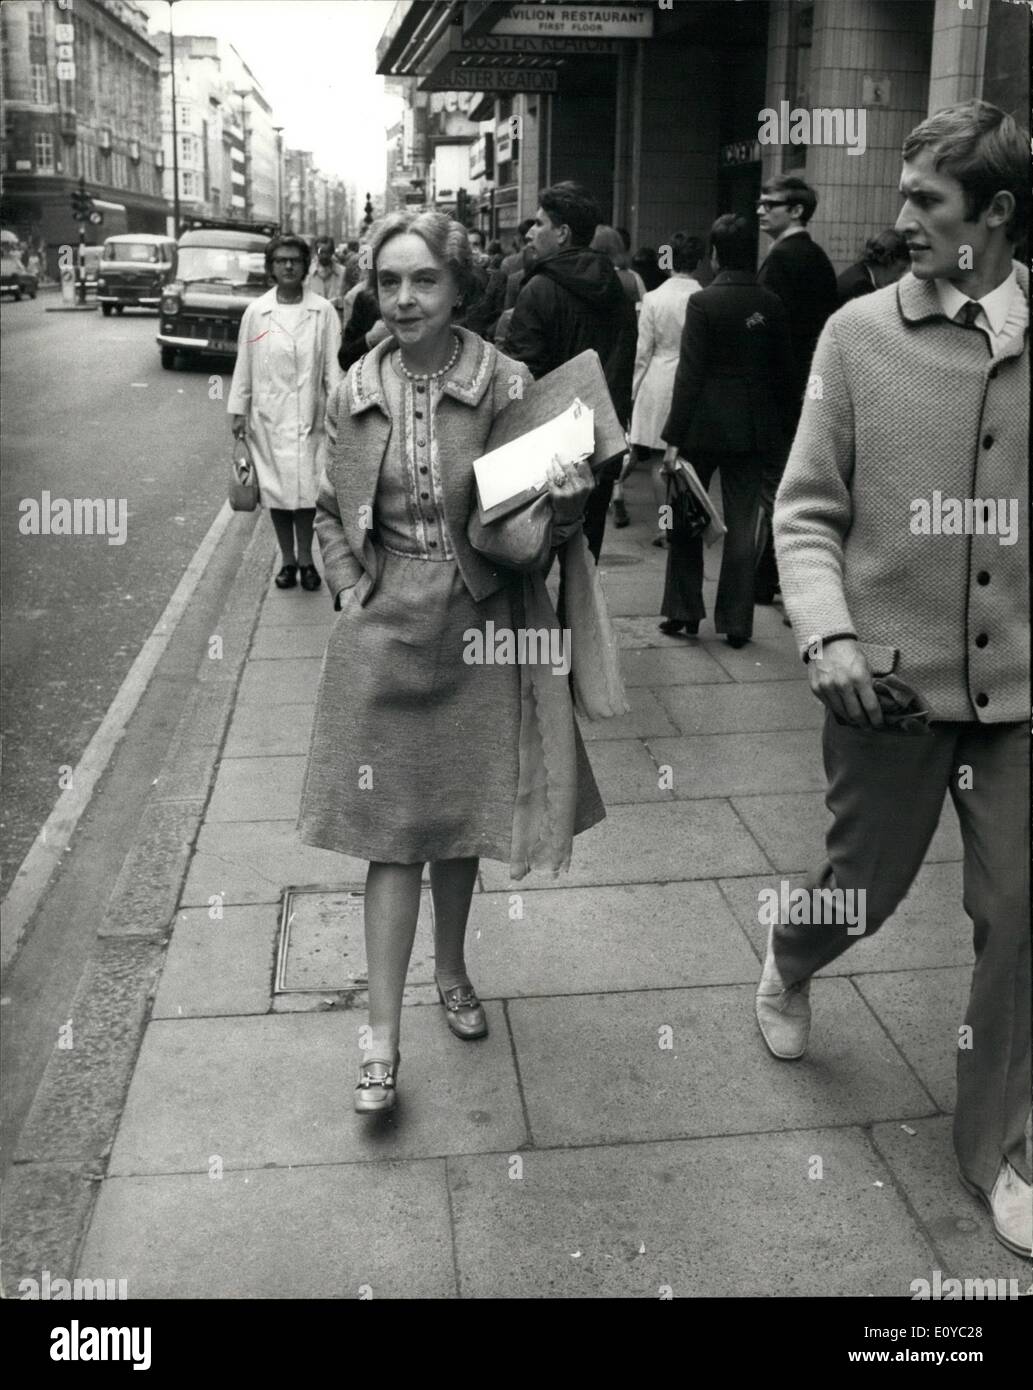 Agosto 08, 1969 - Lillian Gish a Londra: famosi film muto star Lillian Gish è a Londra questa sera lei darà il definitivo John Player celebrity lezioni, nel 1968-1969 serie, all' Accademia di uno, Oxford street. La conferenza tratterà Miss Gish la lunga carriera cinematografica, che includerà film famosi come "Nascita di una nazione' 'l'intolleranza " e " La Lettera Scarlatta'. Mostra fotografica di Miss Lillian Gish visto camminare per Oxford Street questa mattina. Foto Stock